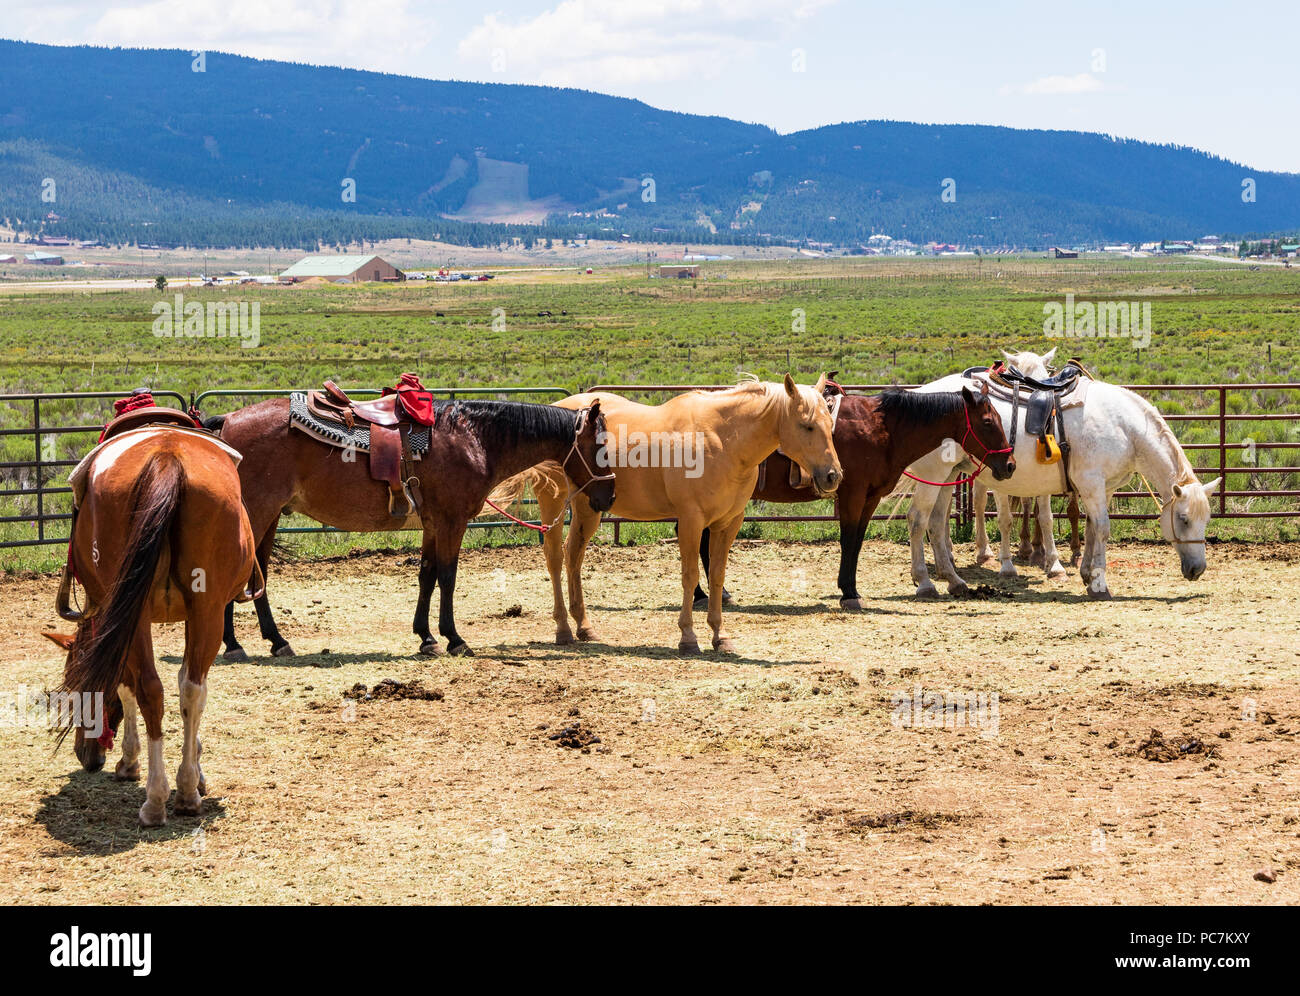 Engel Feuer, NM, USA-7 Juli 18: Ein corral enthält Pferden, einige bereits gesattelt, warten auf ihre Reiter, in einer kleinen Stadt in der Nähe von Taos, NM. Stockfoto